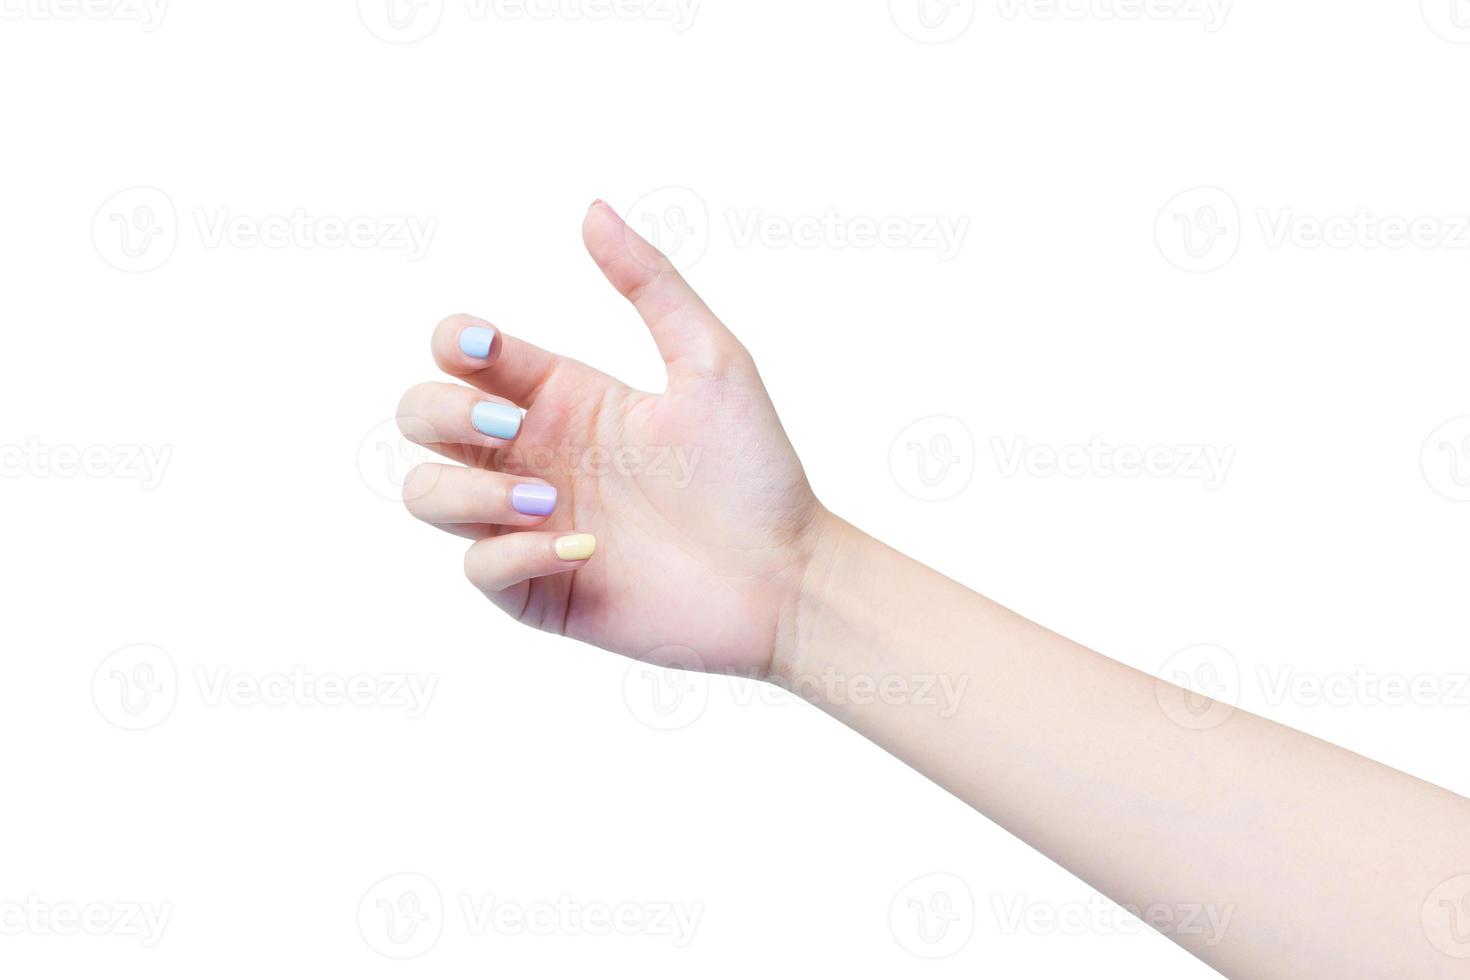 bela mão feminina atua como aplicação de loção ou creme para as mãos para cuidar das mãos enquanto ela segura algo nas mãos no conceito de spa e manicure. foto